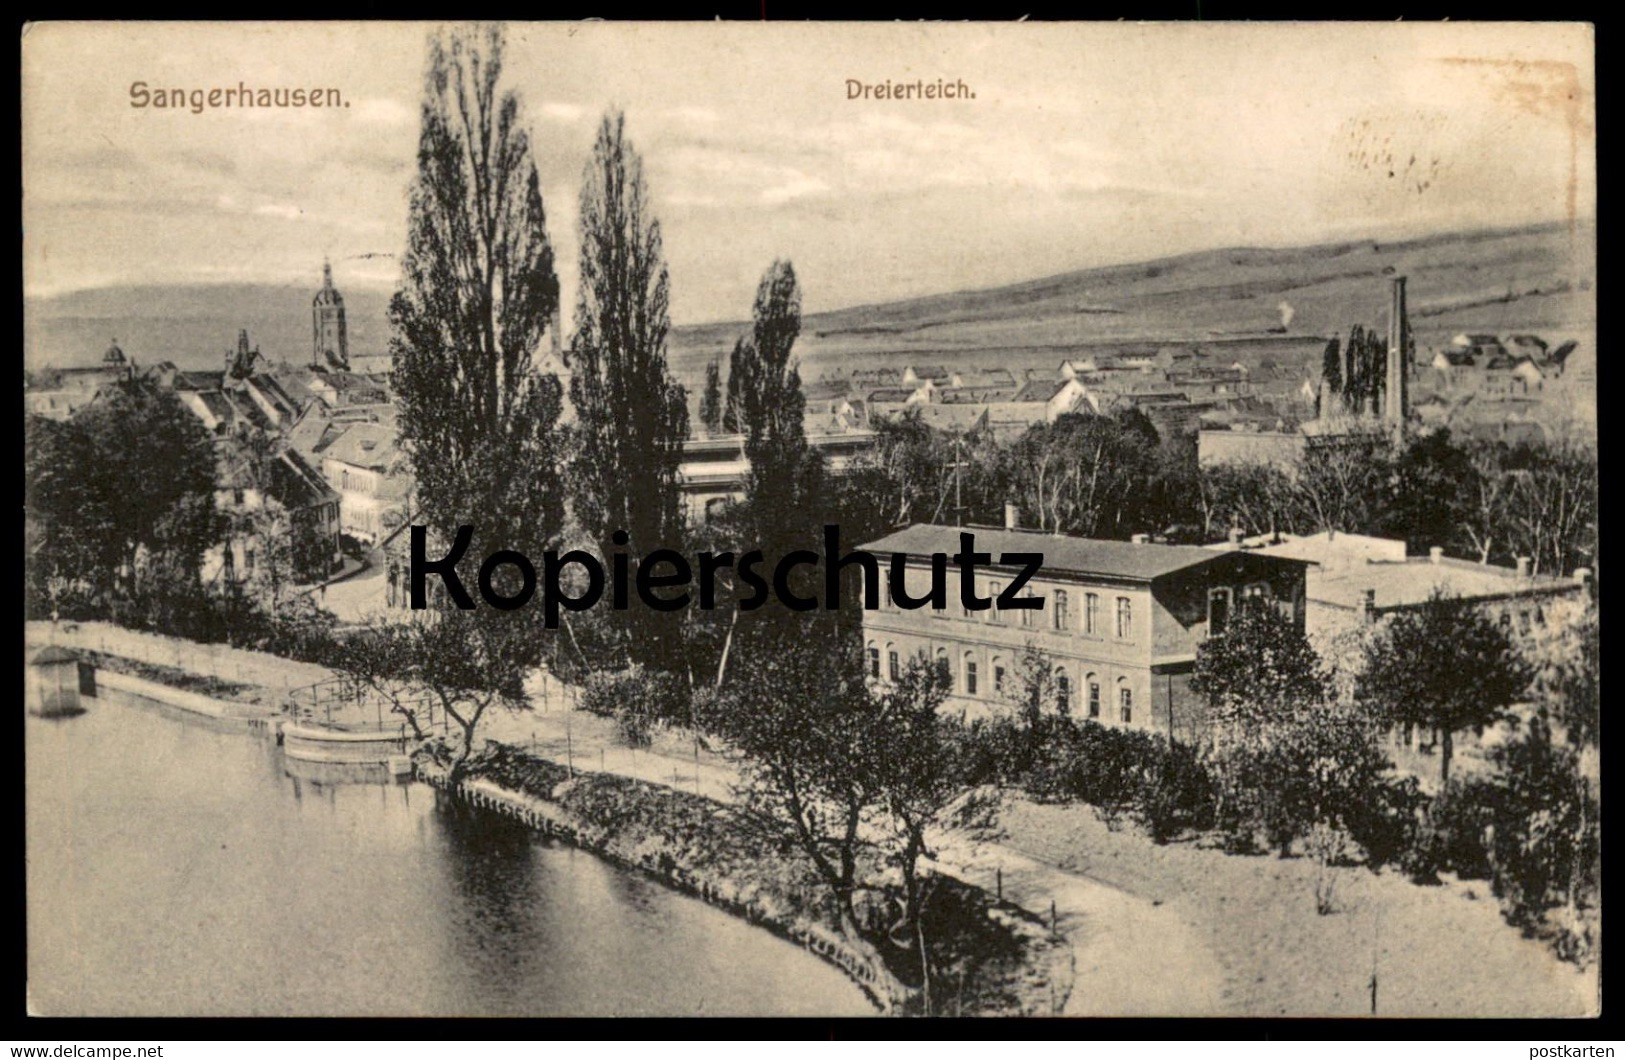 ALTE POSTKARTE SANGERHAUSEN DREIERTEICH 1916 PANORAMA Feldpoststempel Cachet Feldpost Ansichtskarte AK Cpa Postcard - Sangerhausen